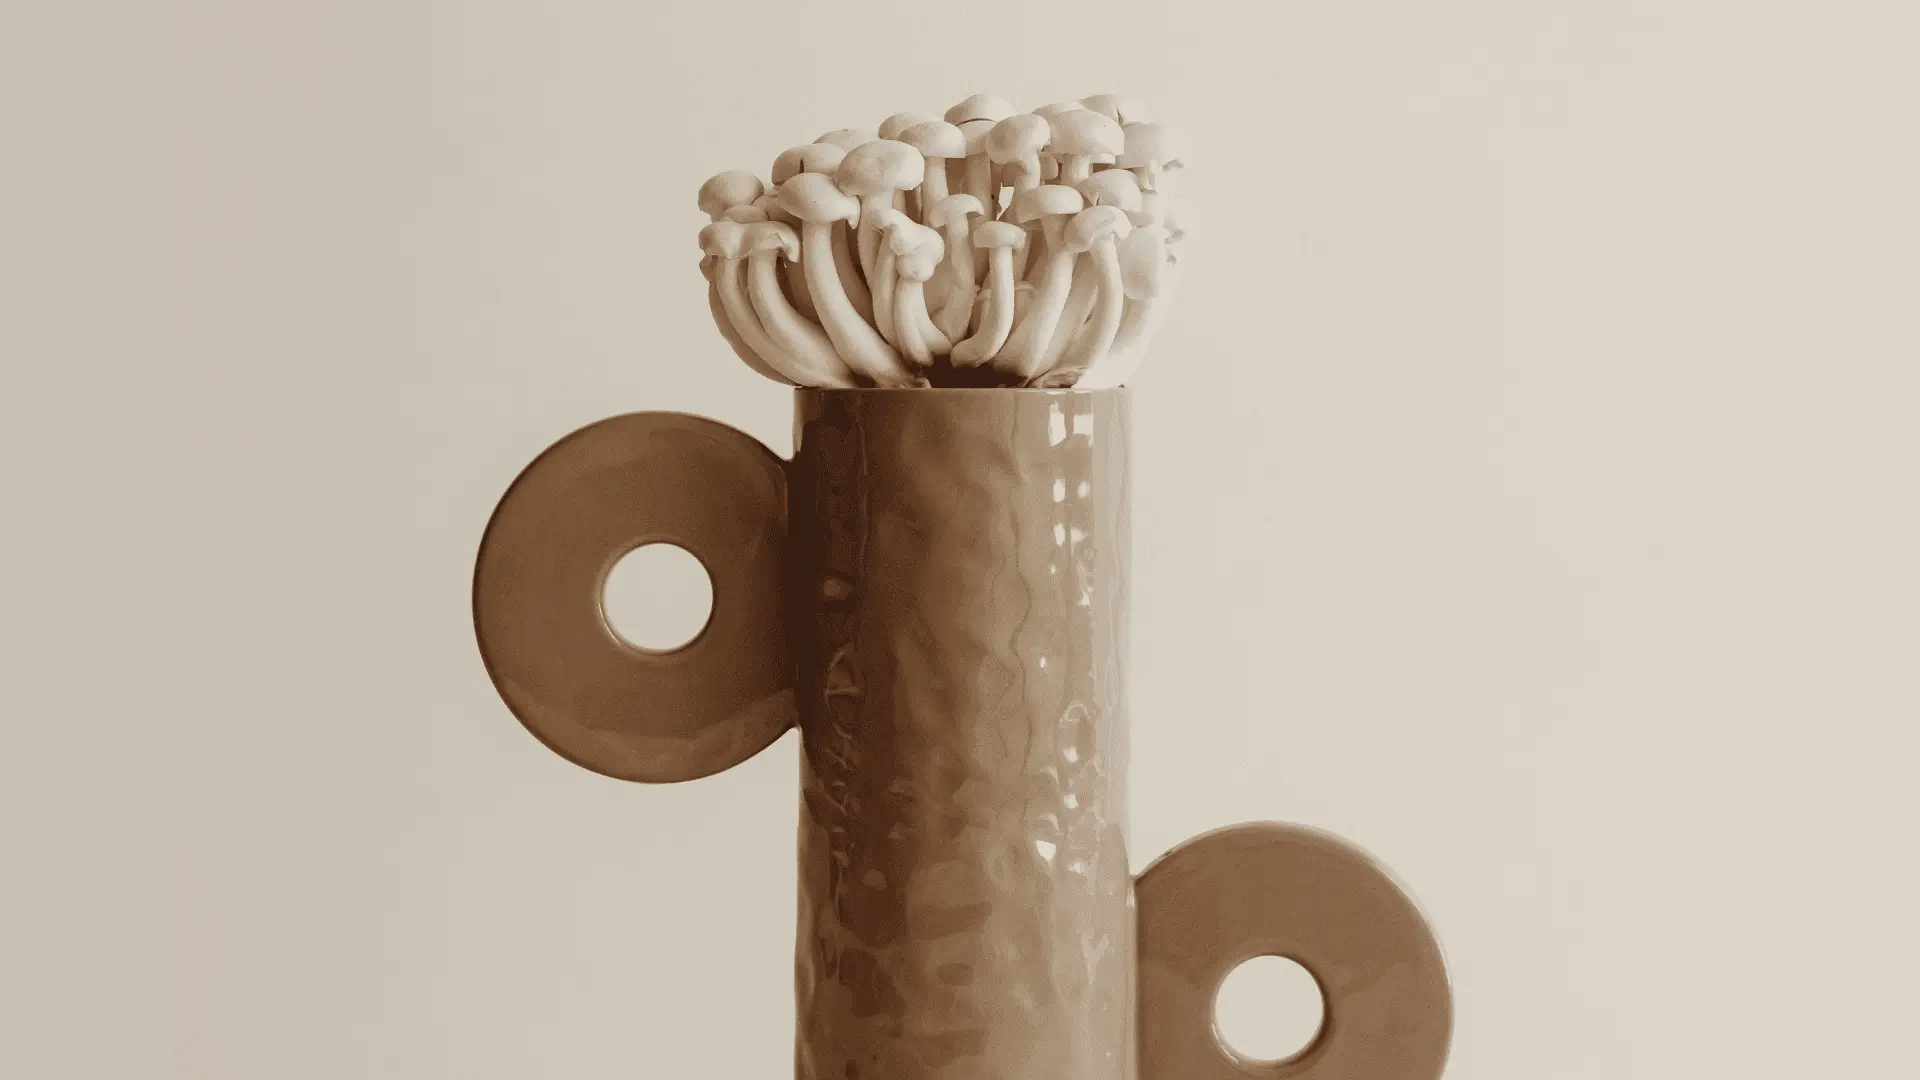 jarrón de cerámica marrón con setas Shimeji